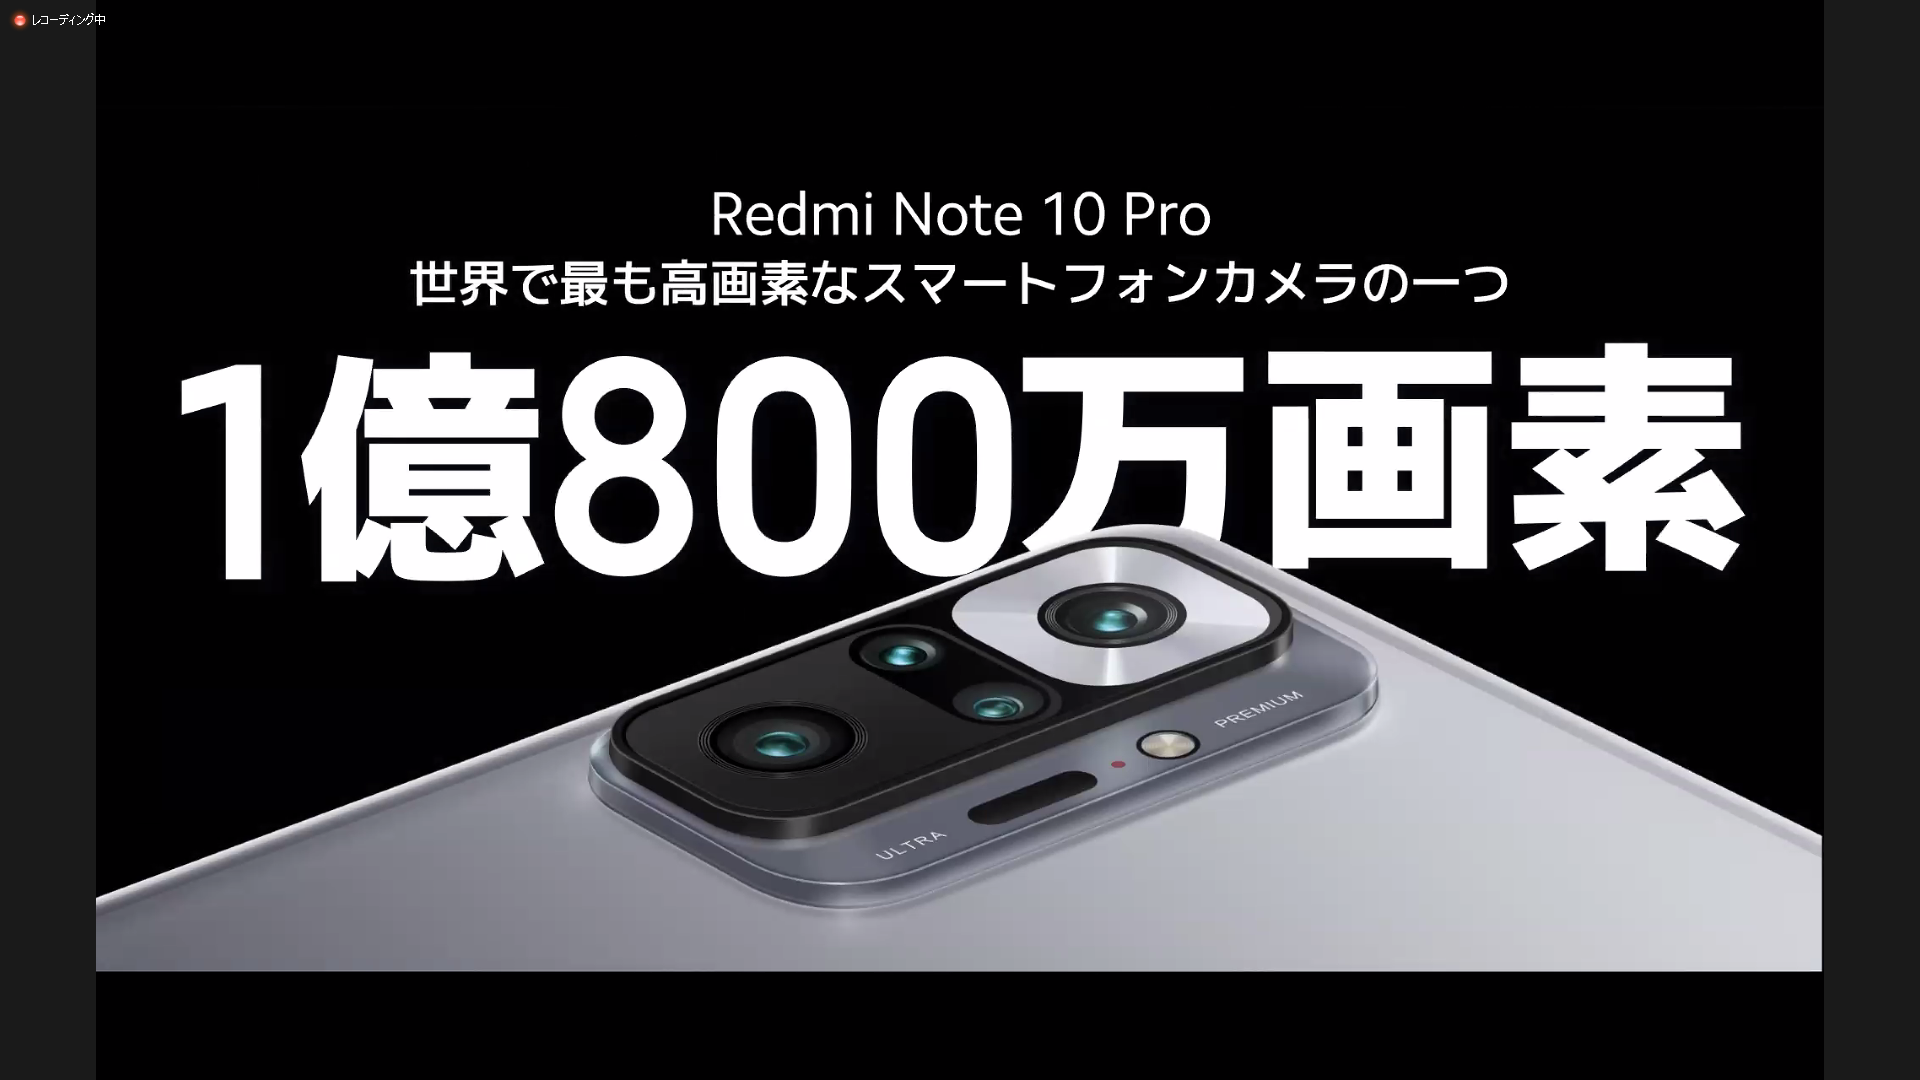 シャオミ、1億画素カメラを備える「Redmi Note 10 Pro」 - ケータイ Watch